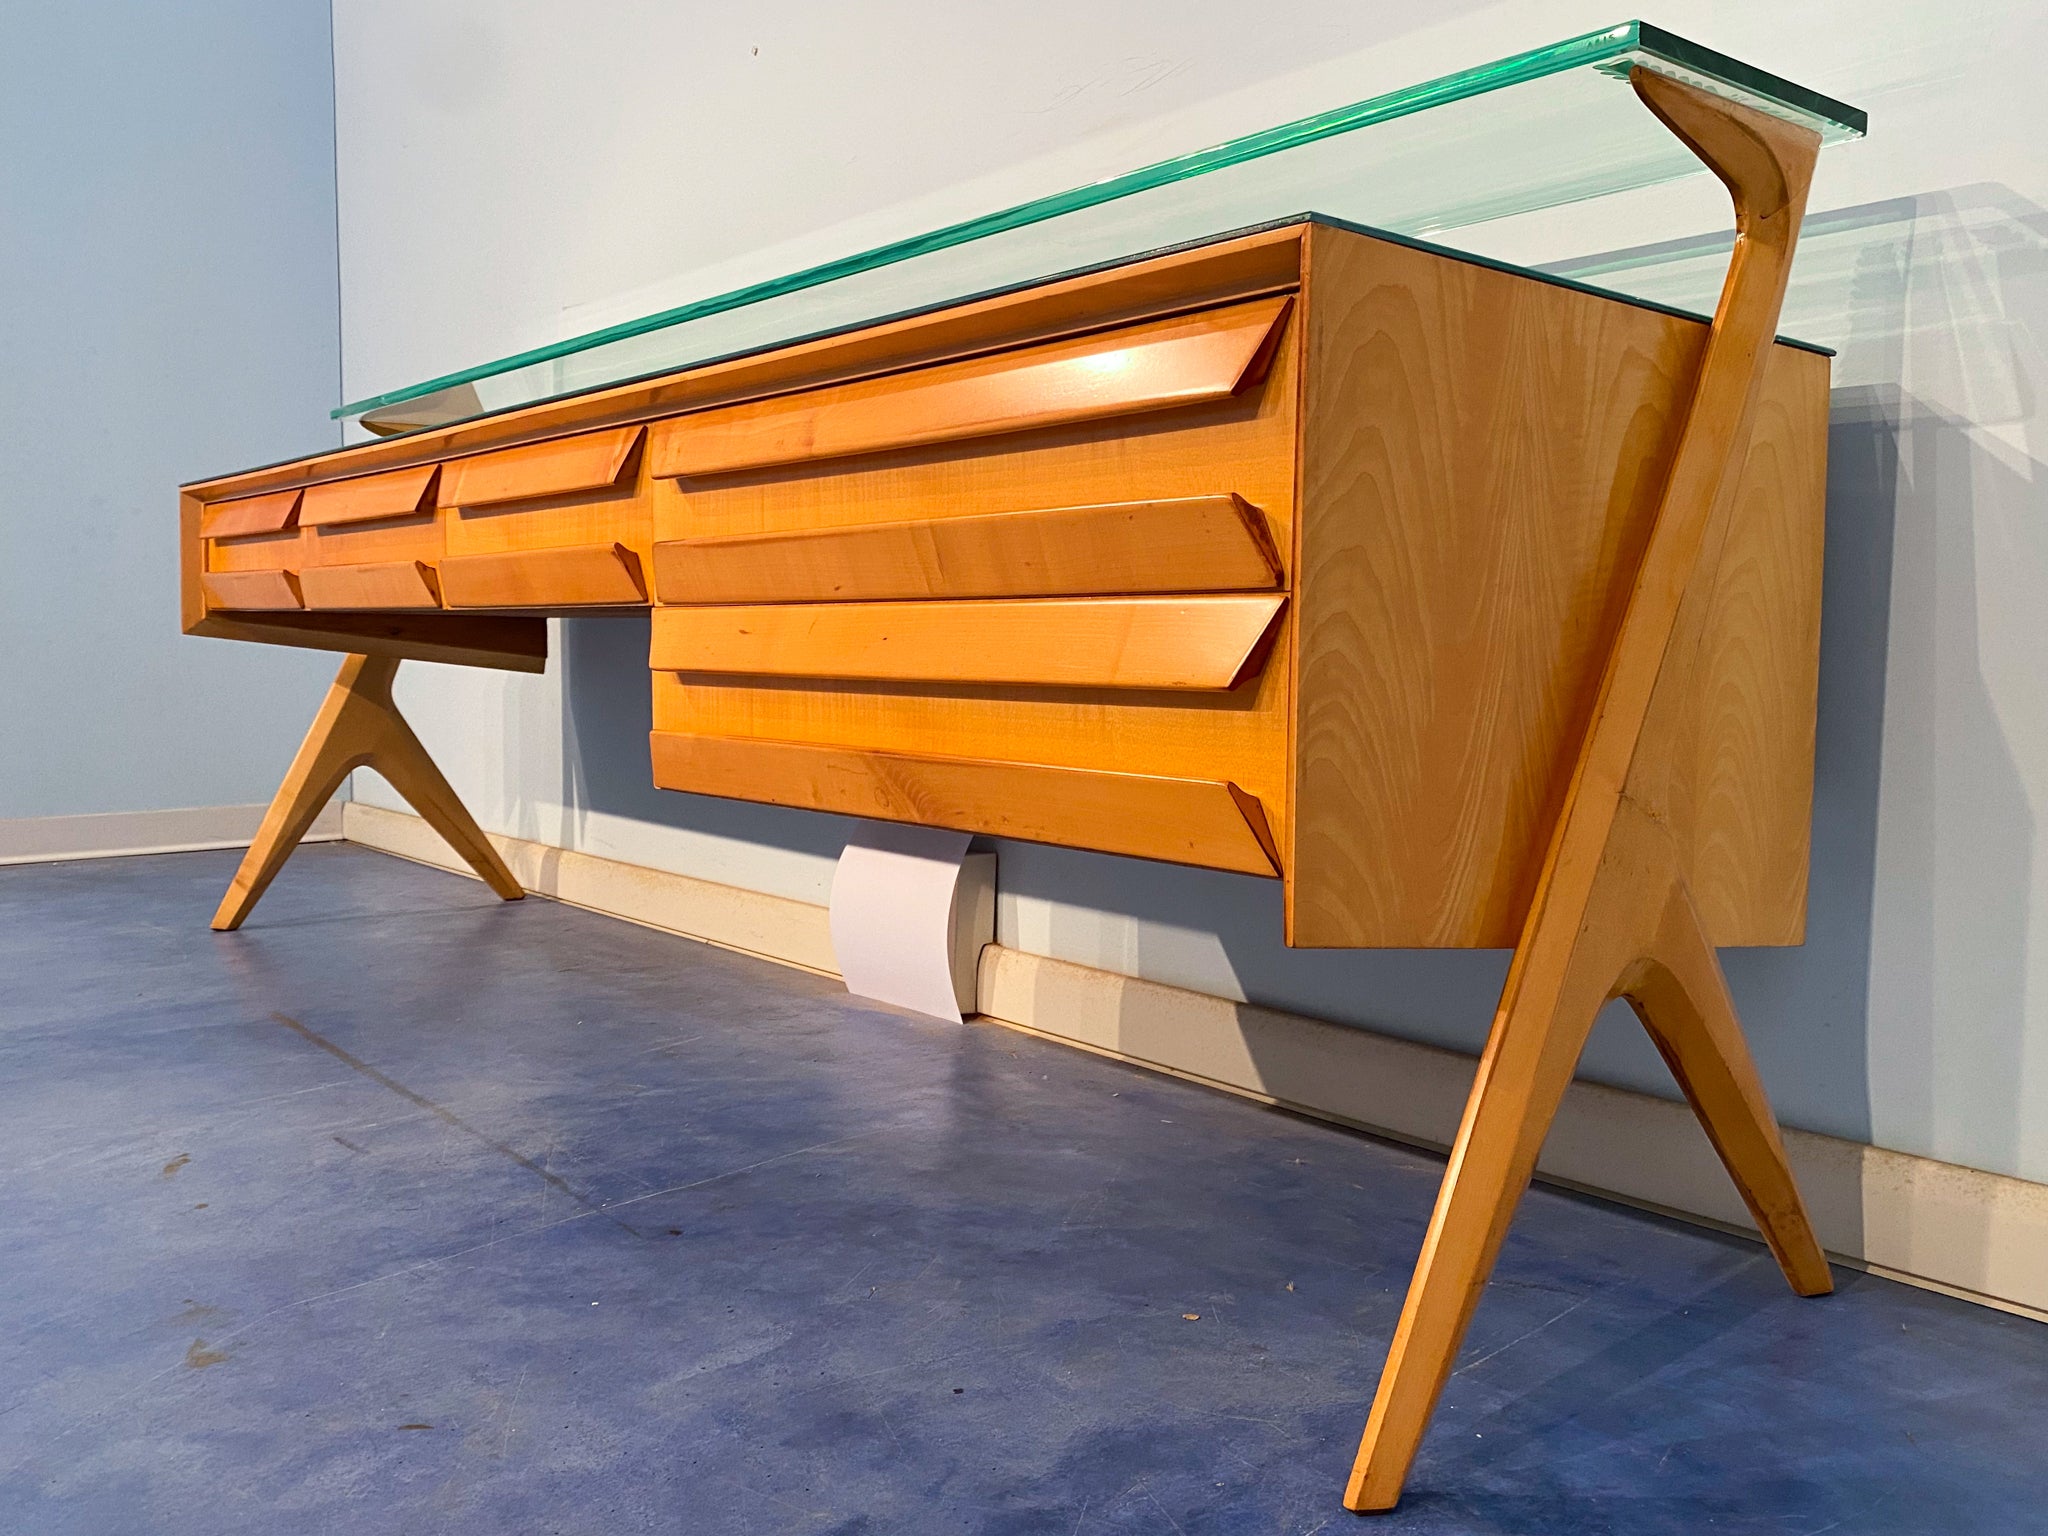 Schönes Sideboard, entworfen von Vittorio e Plinio Dassi und in den 1950er Jahren von Barovier & Toso in Murano gefertigt. Seine ästhetische Einzigartigkeit geht auf das ursprüngliche skulpturale Formdesign der Schubladen und seitlichen Stützen